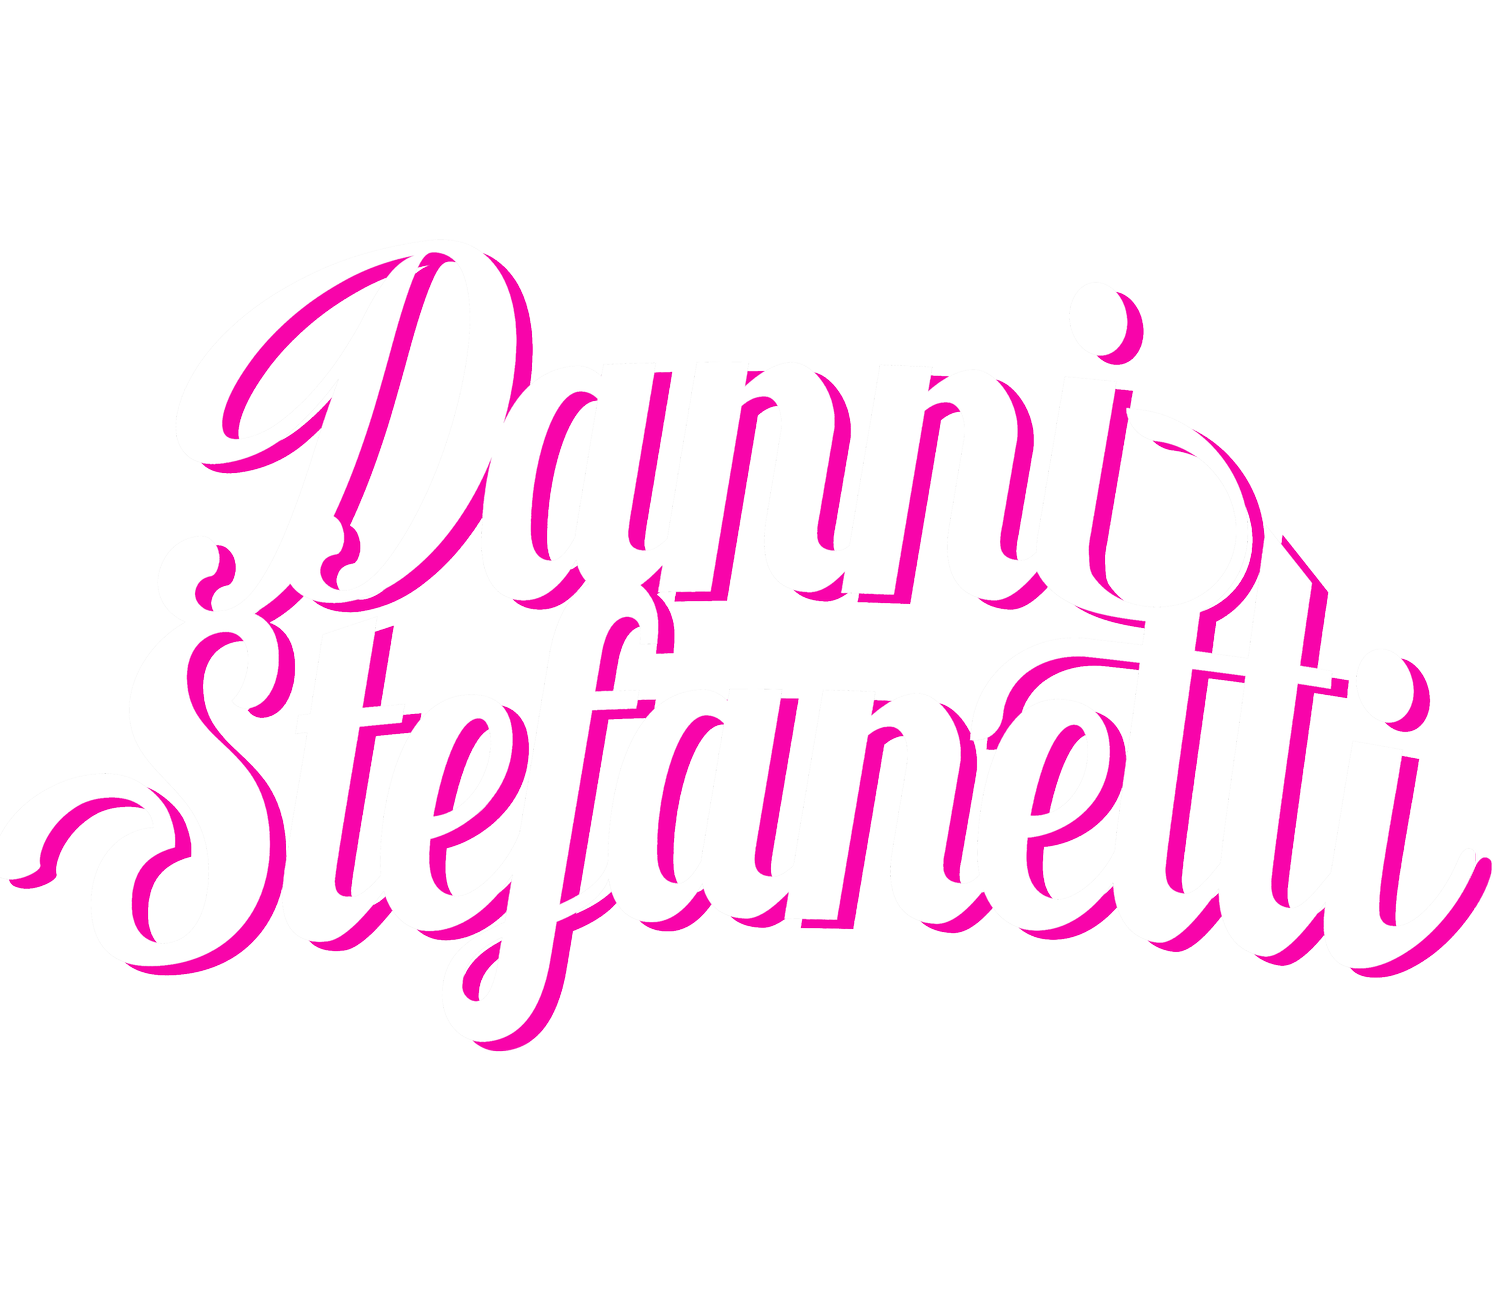 Danni Stefanetti